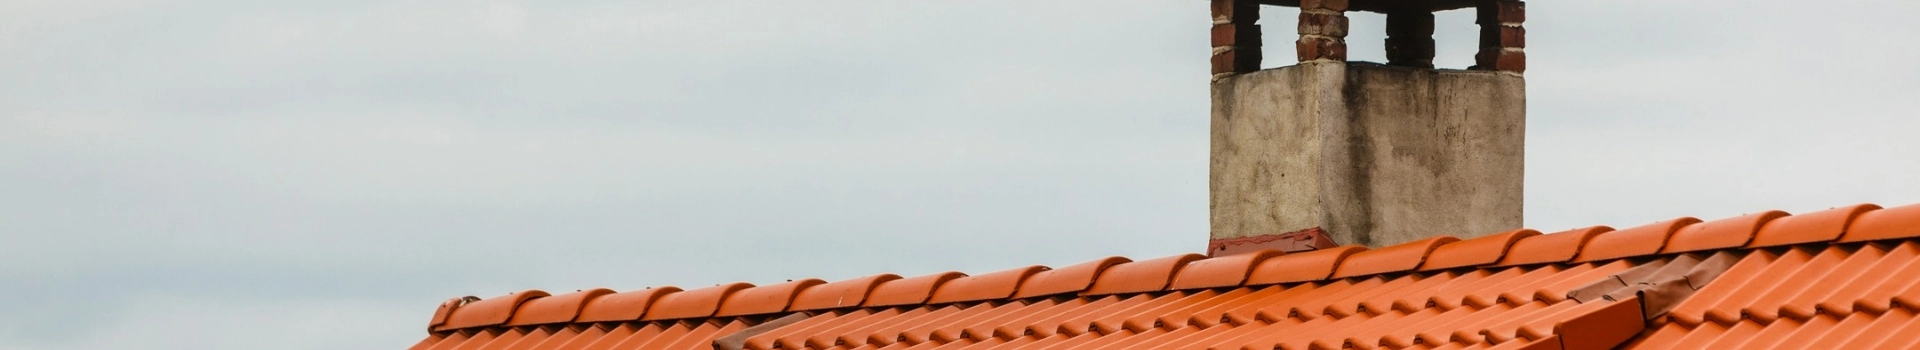 Komin na dachu pokrytym pomarańczową dachówką